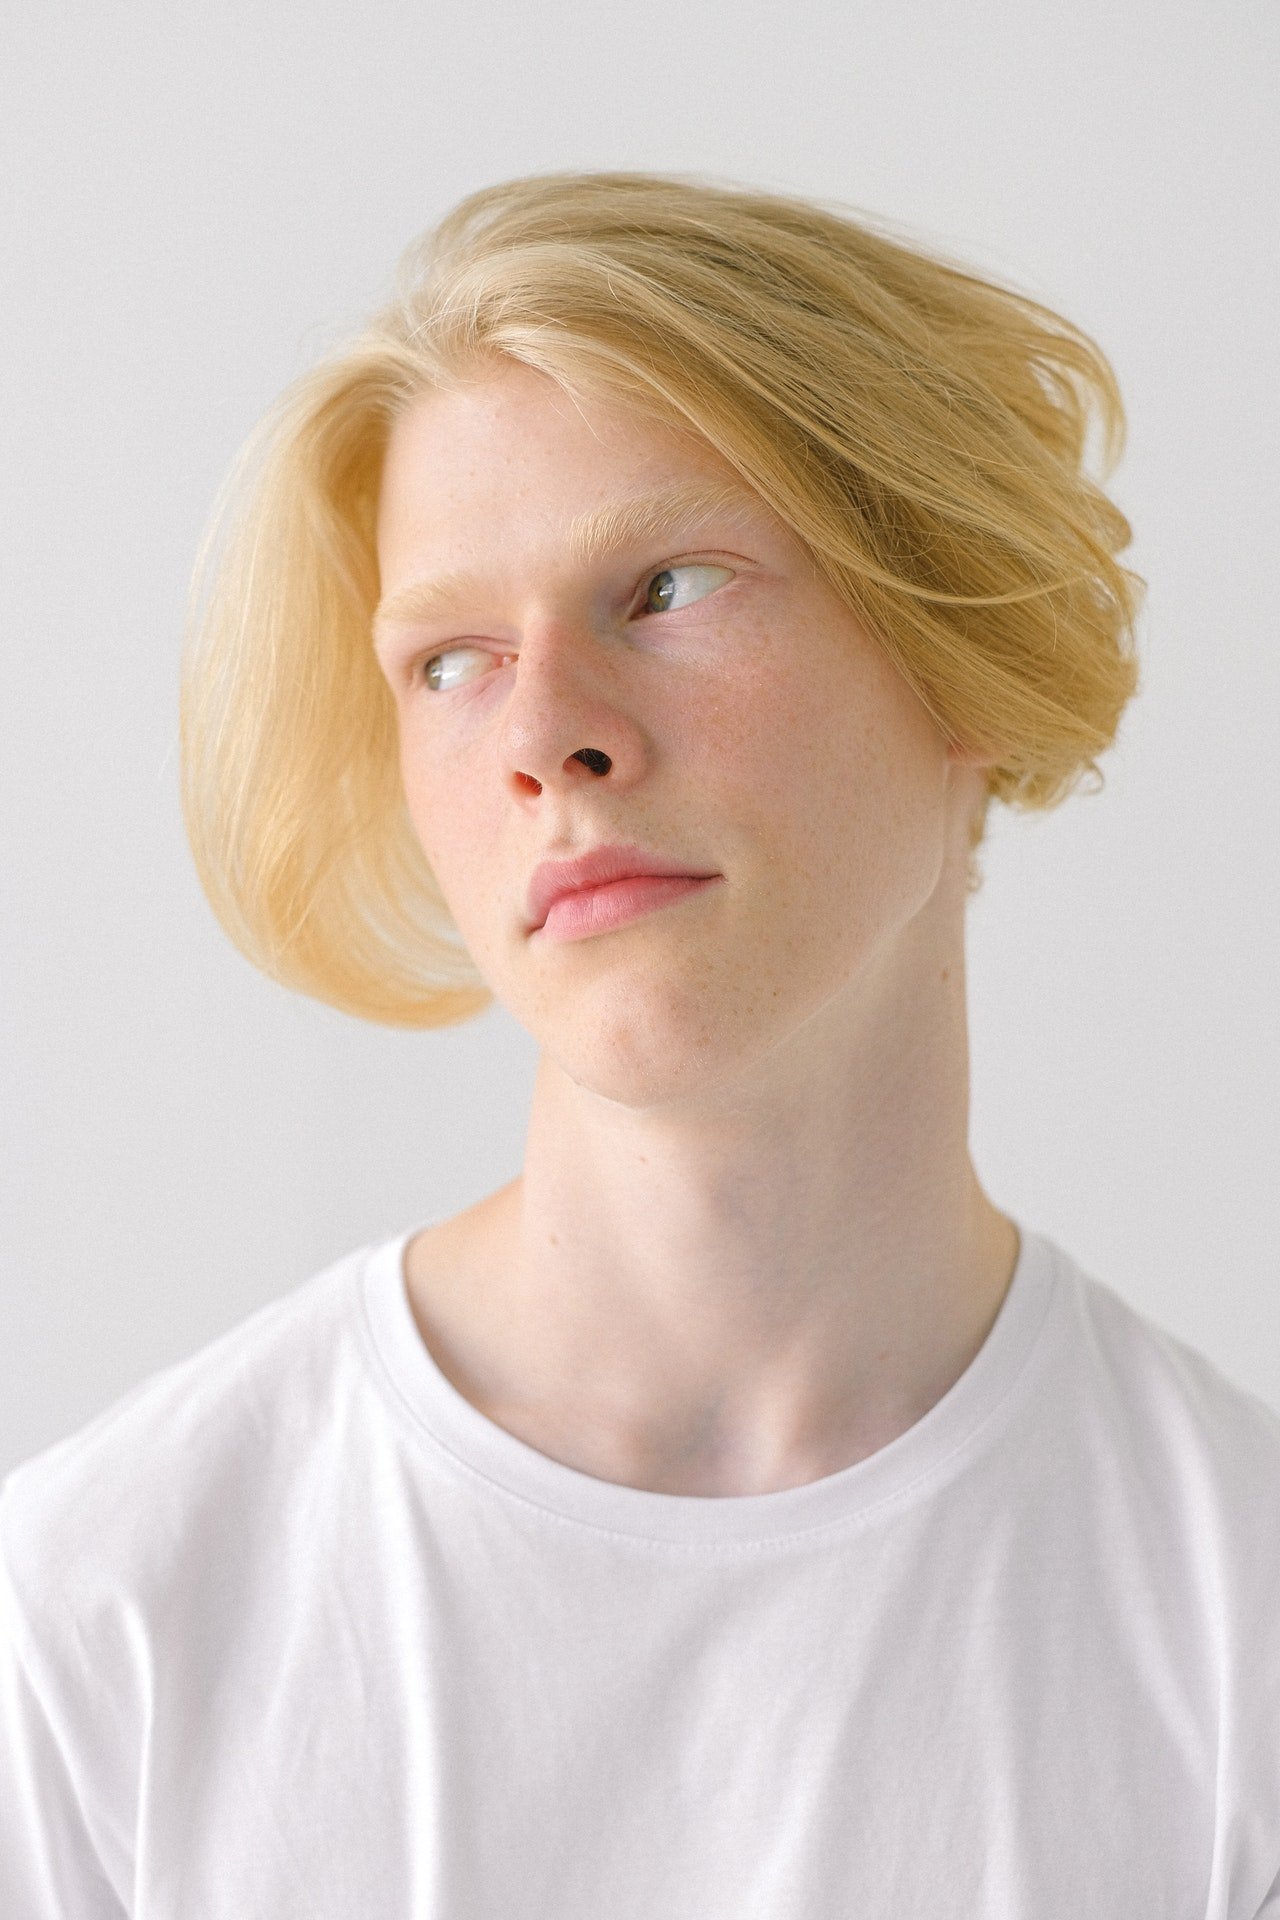 Blonde teenager looking away | Source: Pexels